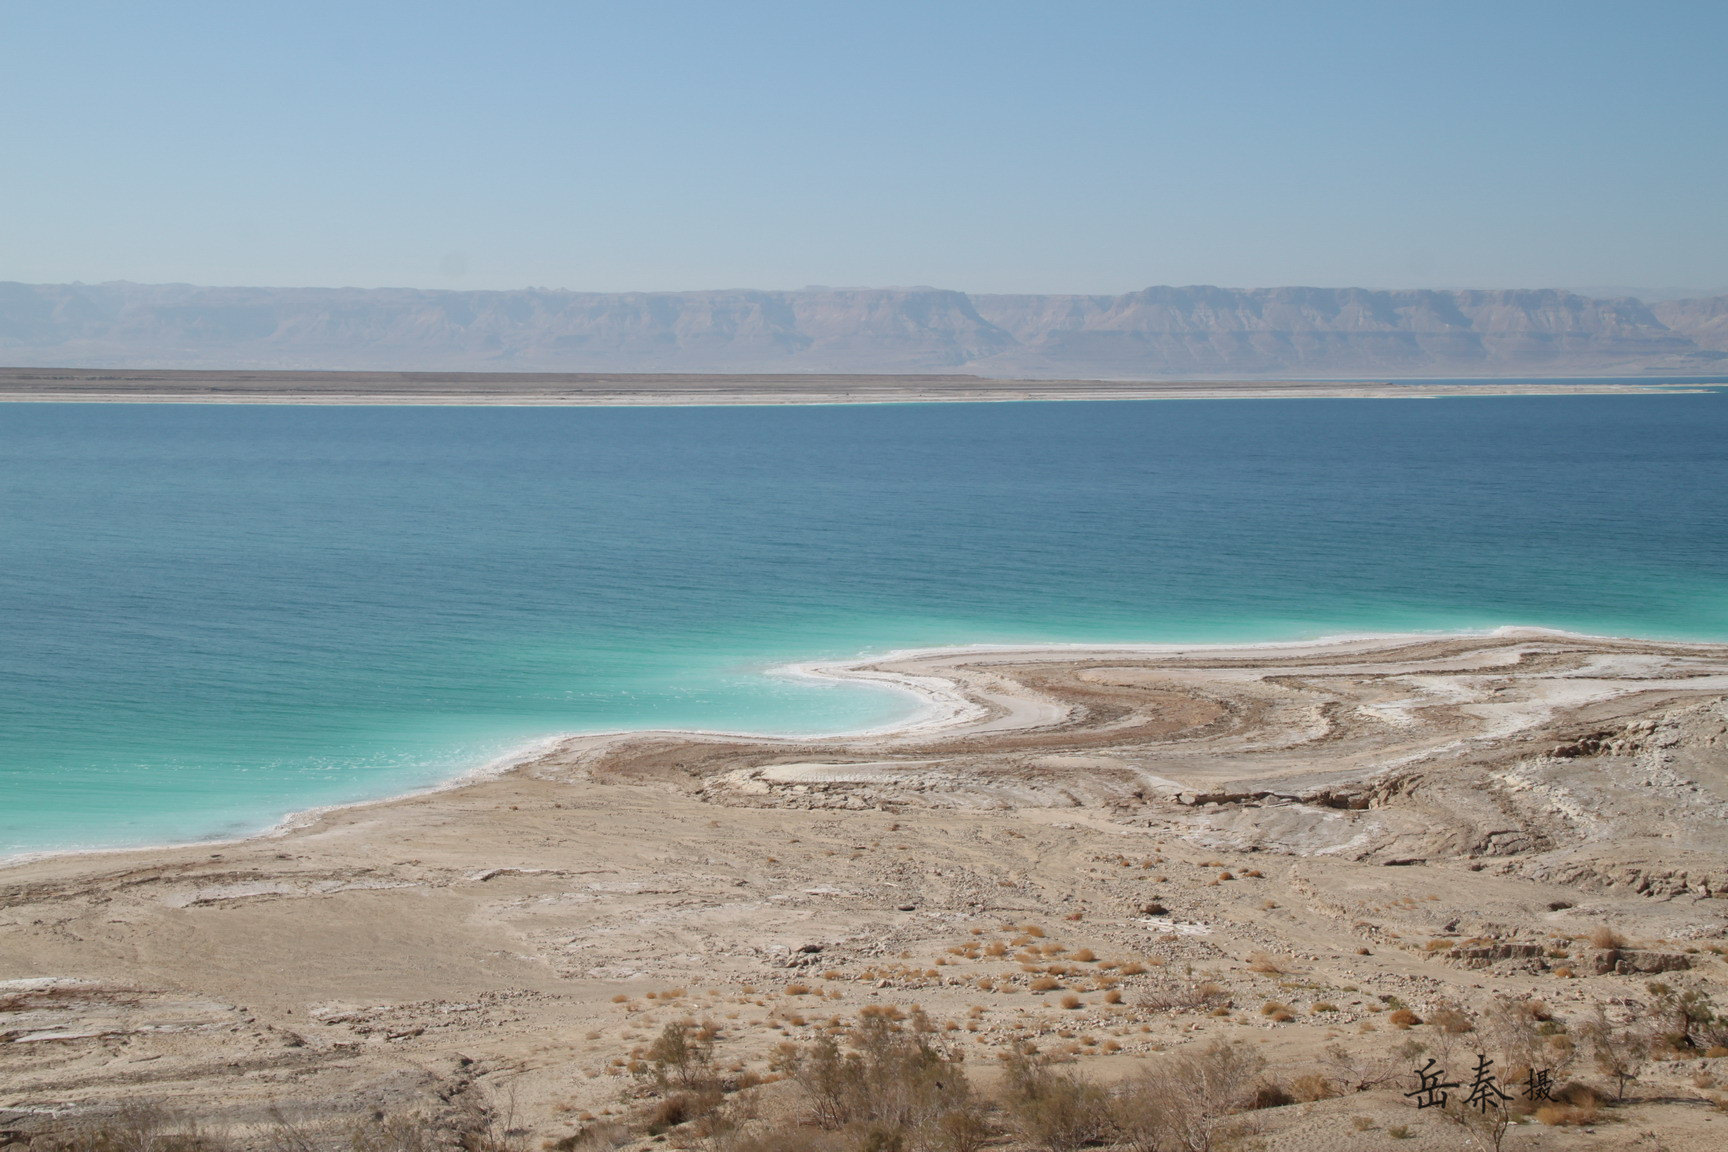 在约旦，我觉得最美丽的就是死海了。跟这个名字实在不相符，死海有几段简直是美到不可置信。蓝莹莹的水，以